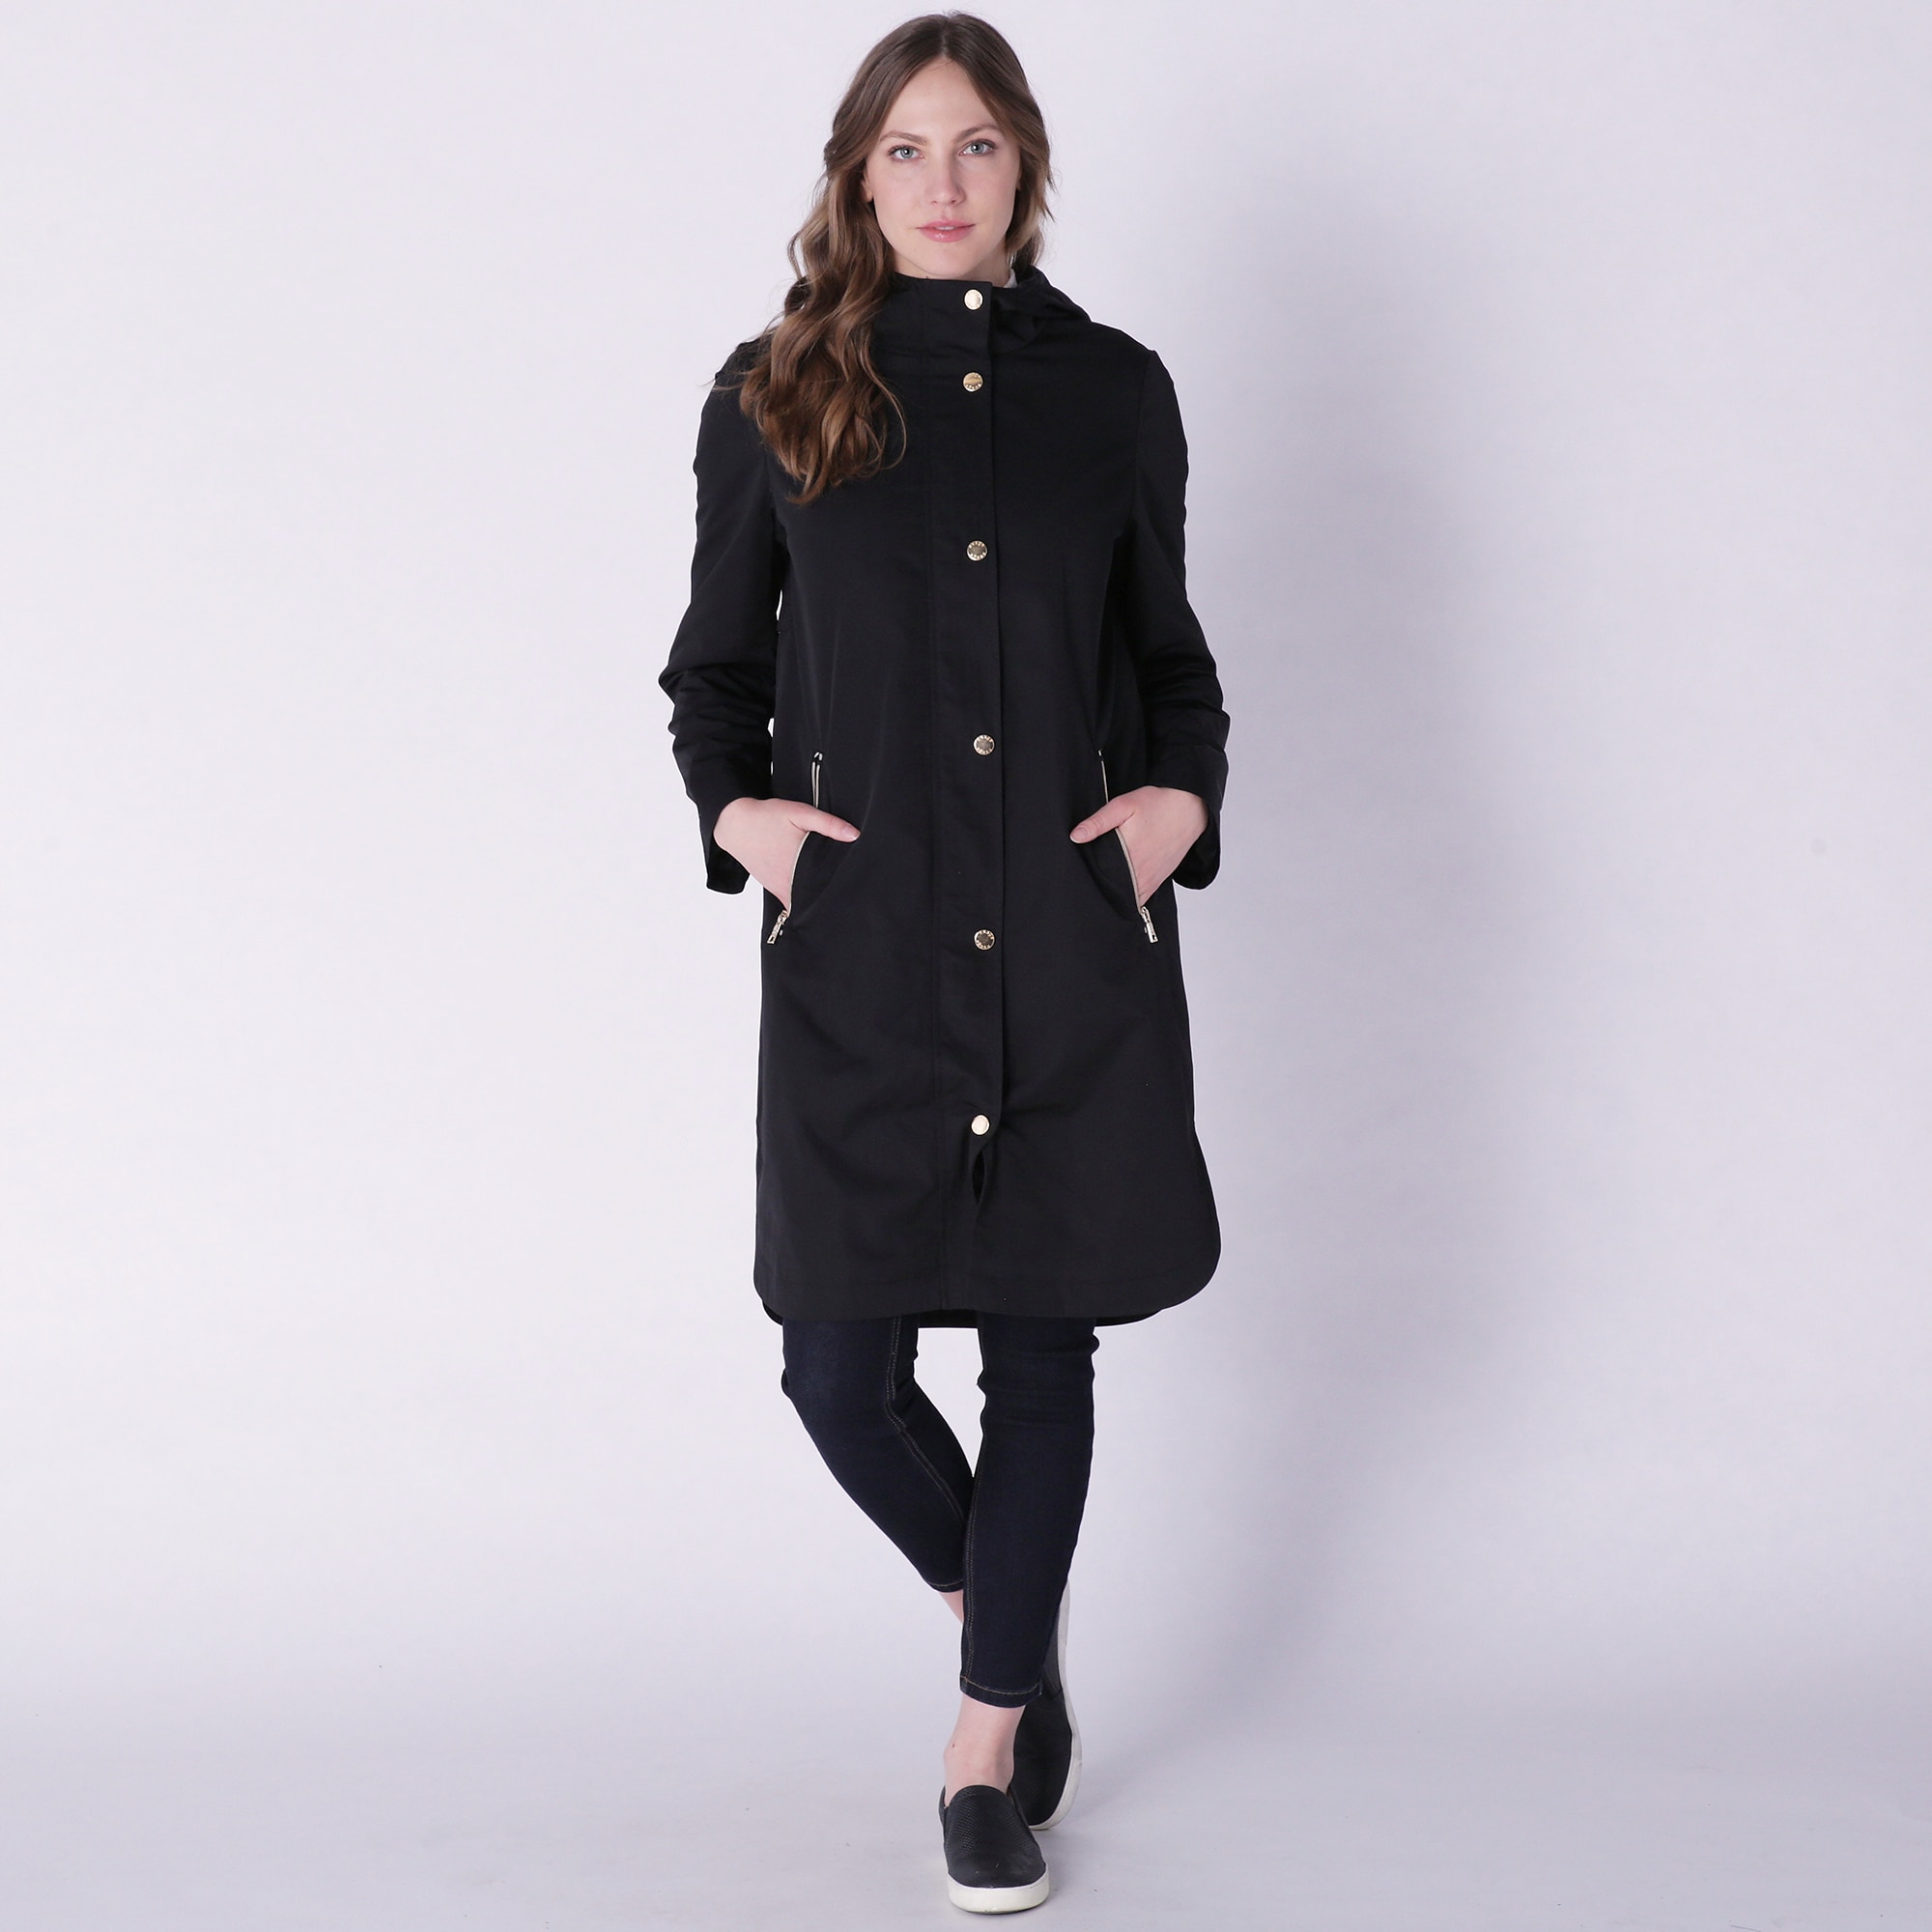 Clothing & Shoes - Jackets & Coats - Coats & Parkas - Nuage Aviana